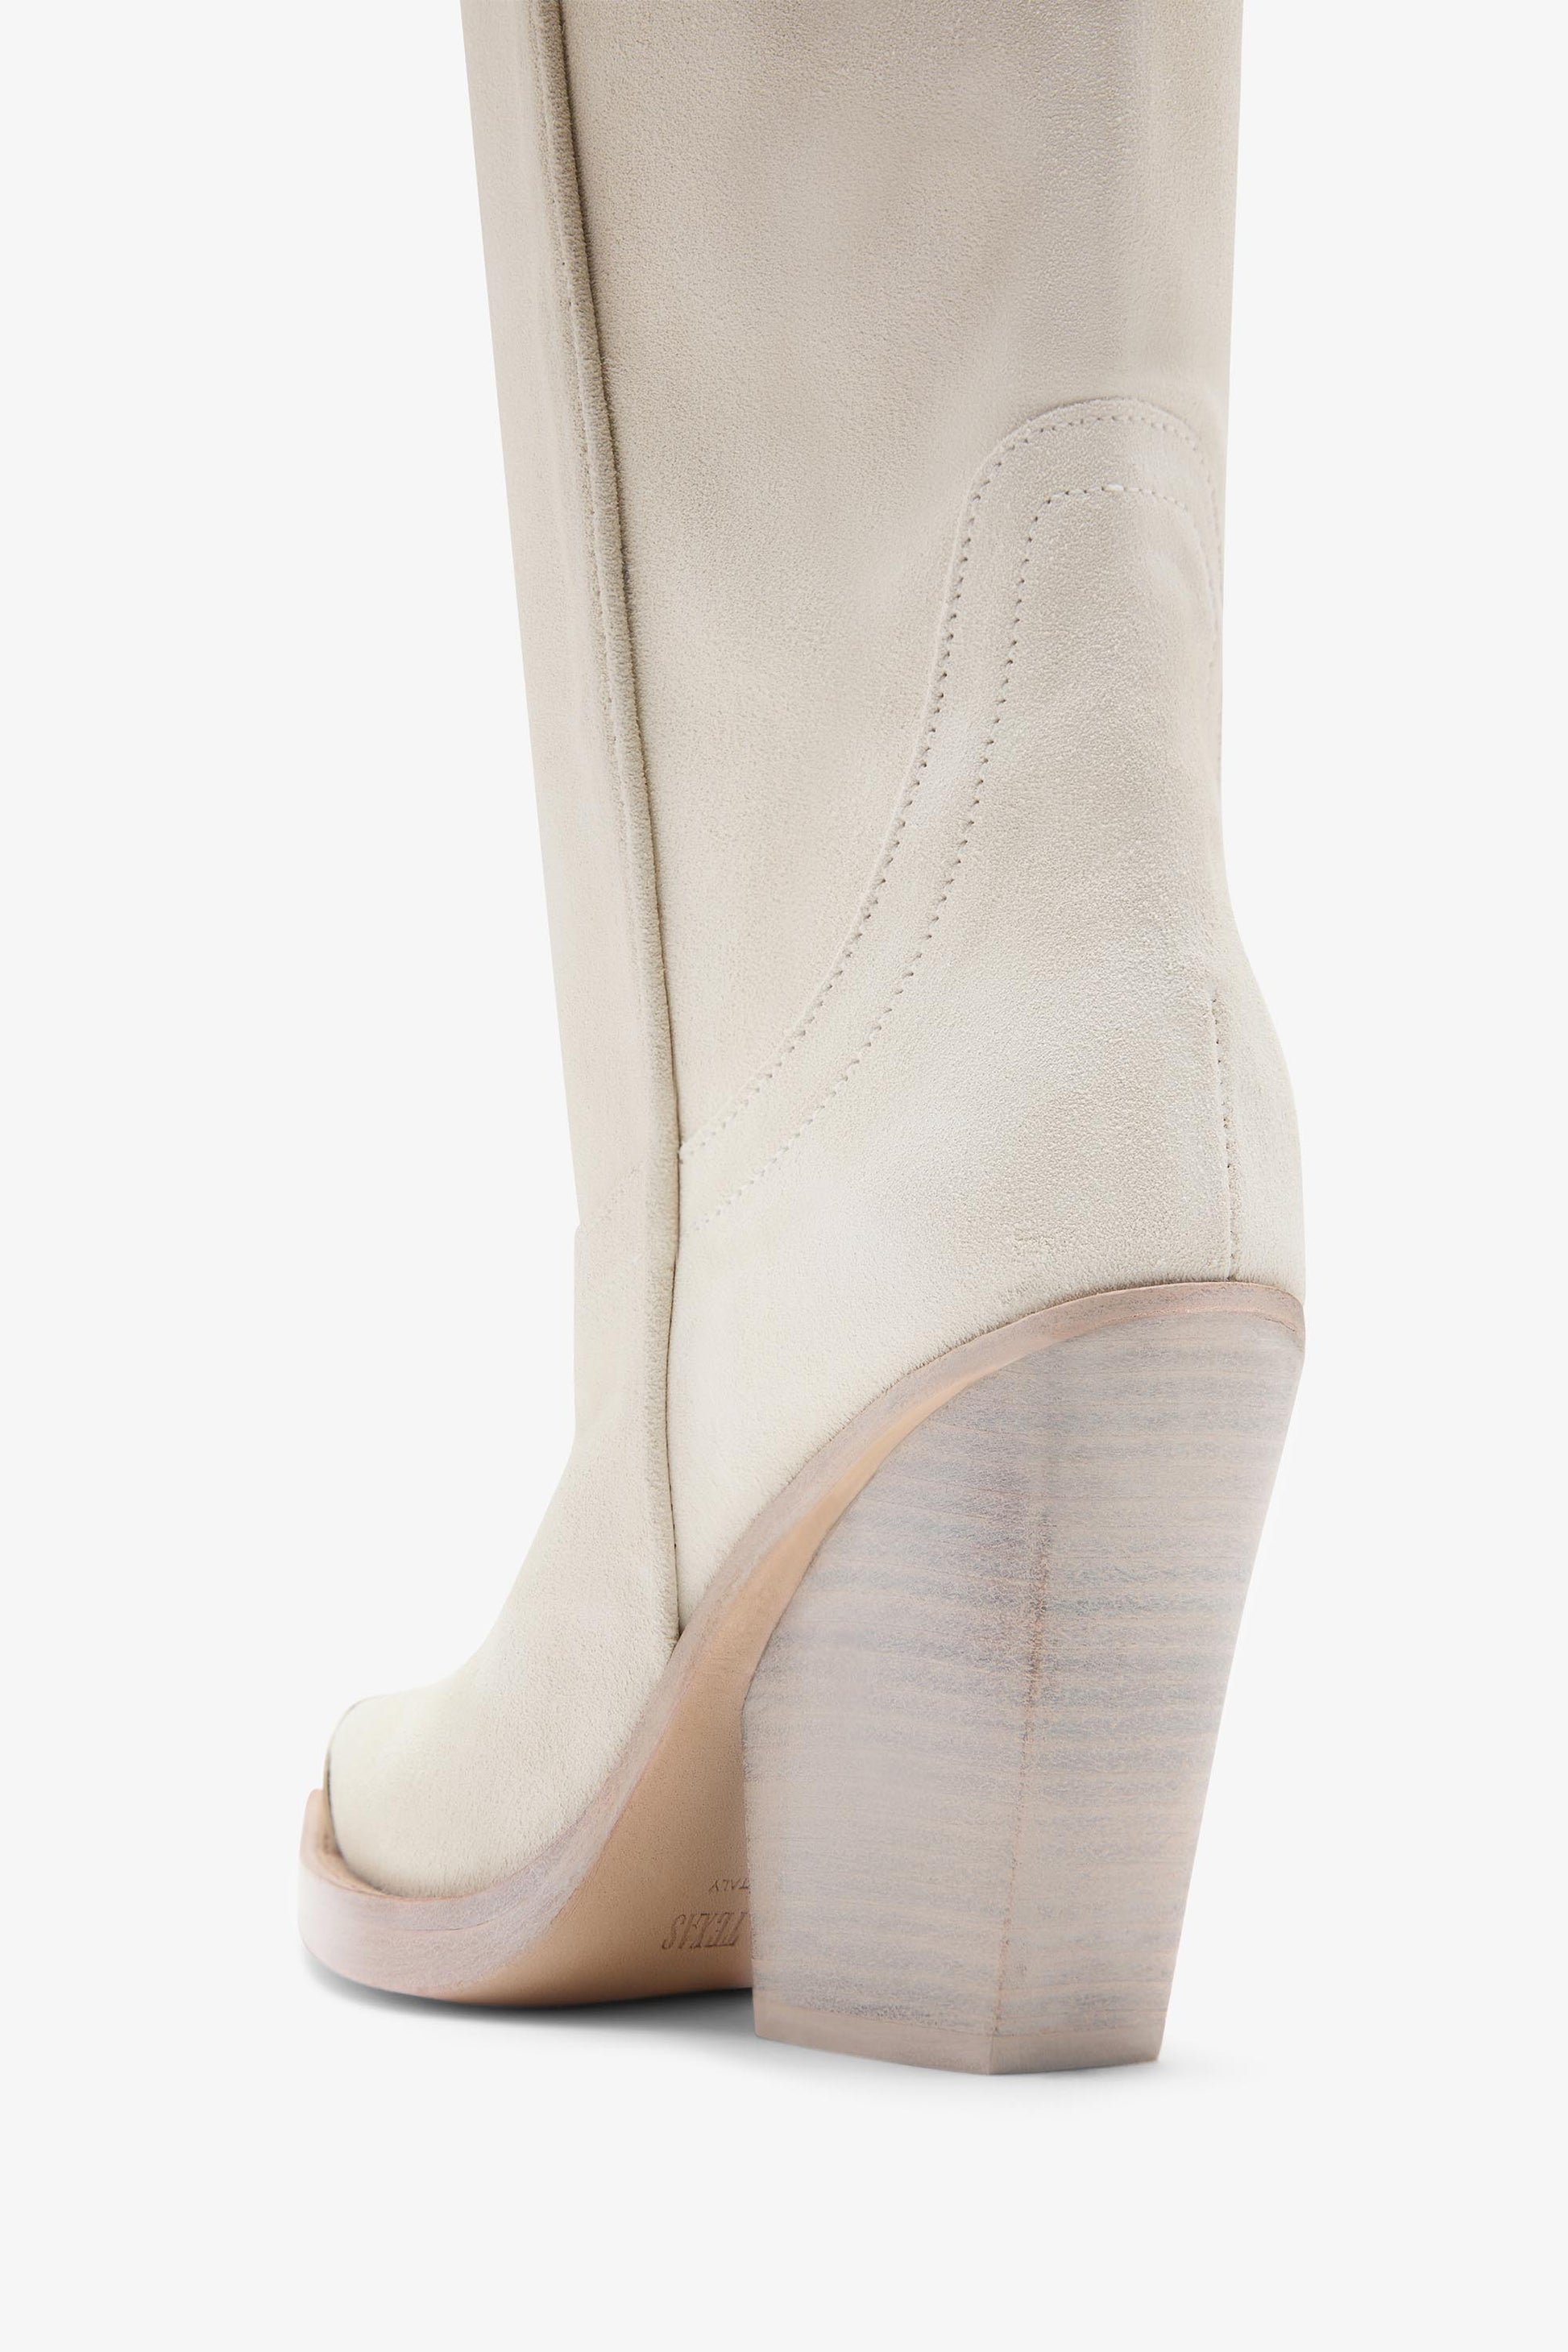 Stiefel aus Veloursleder in der Farbe Milch mit "uberzogener Schuhspitze